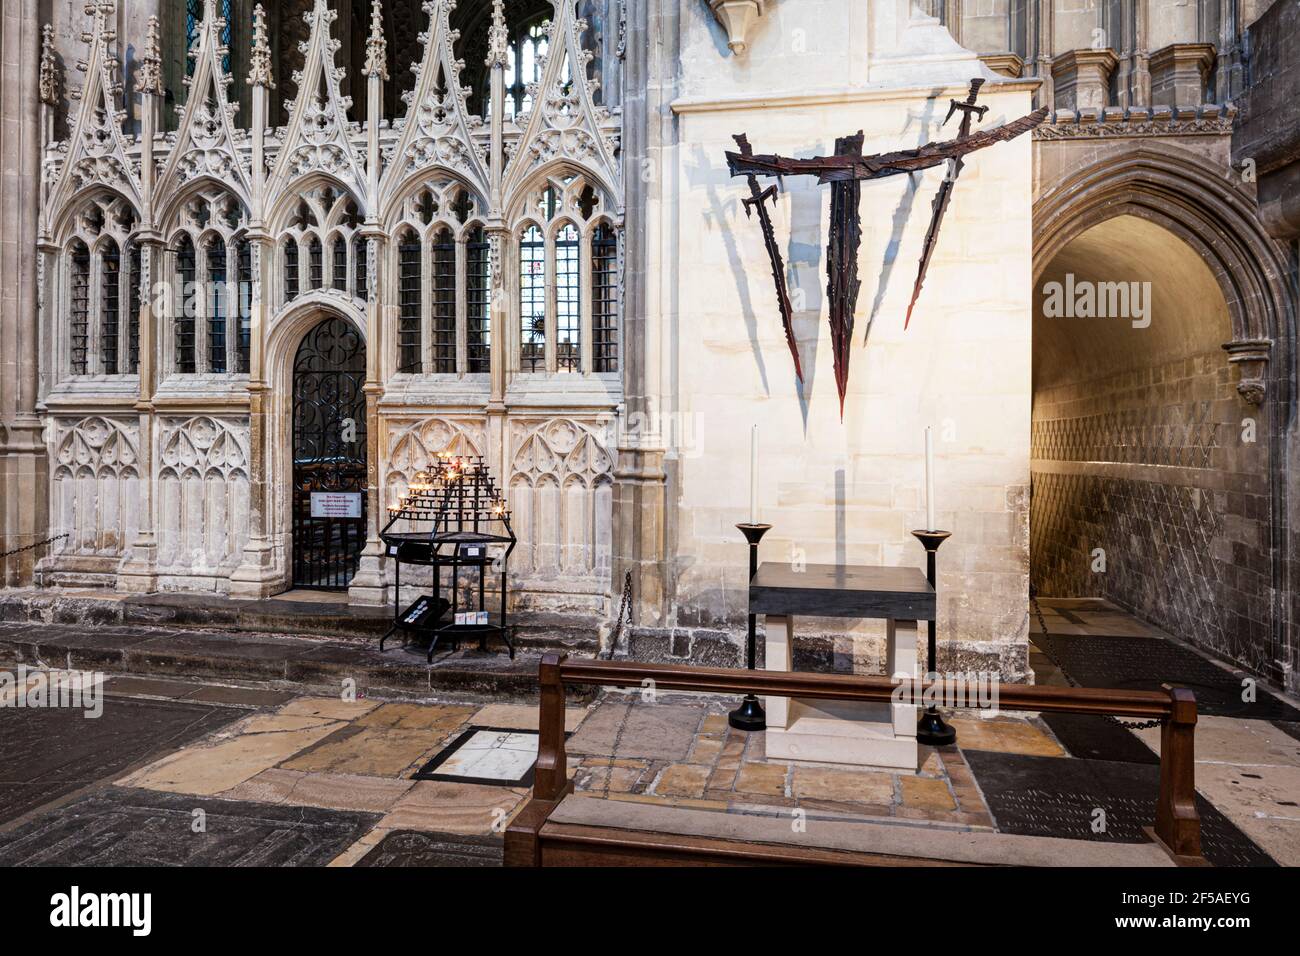 Das Martyrium in der Kathedrale von Canterbury, Kent, Großbritannien, markiert den Ort, an dem St. Thomas Becket 1170 ermordet wurde. Stockfoto